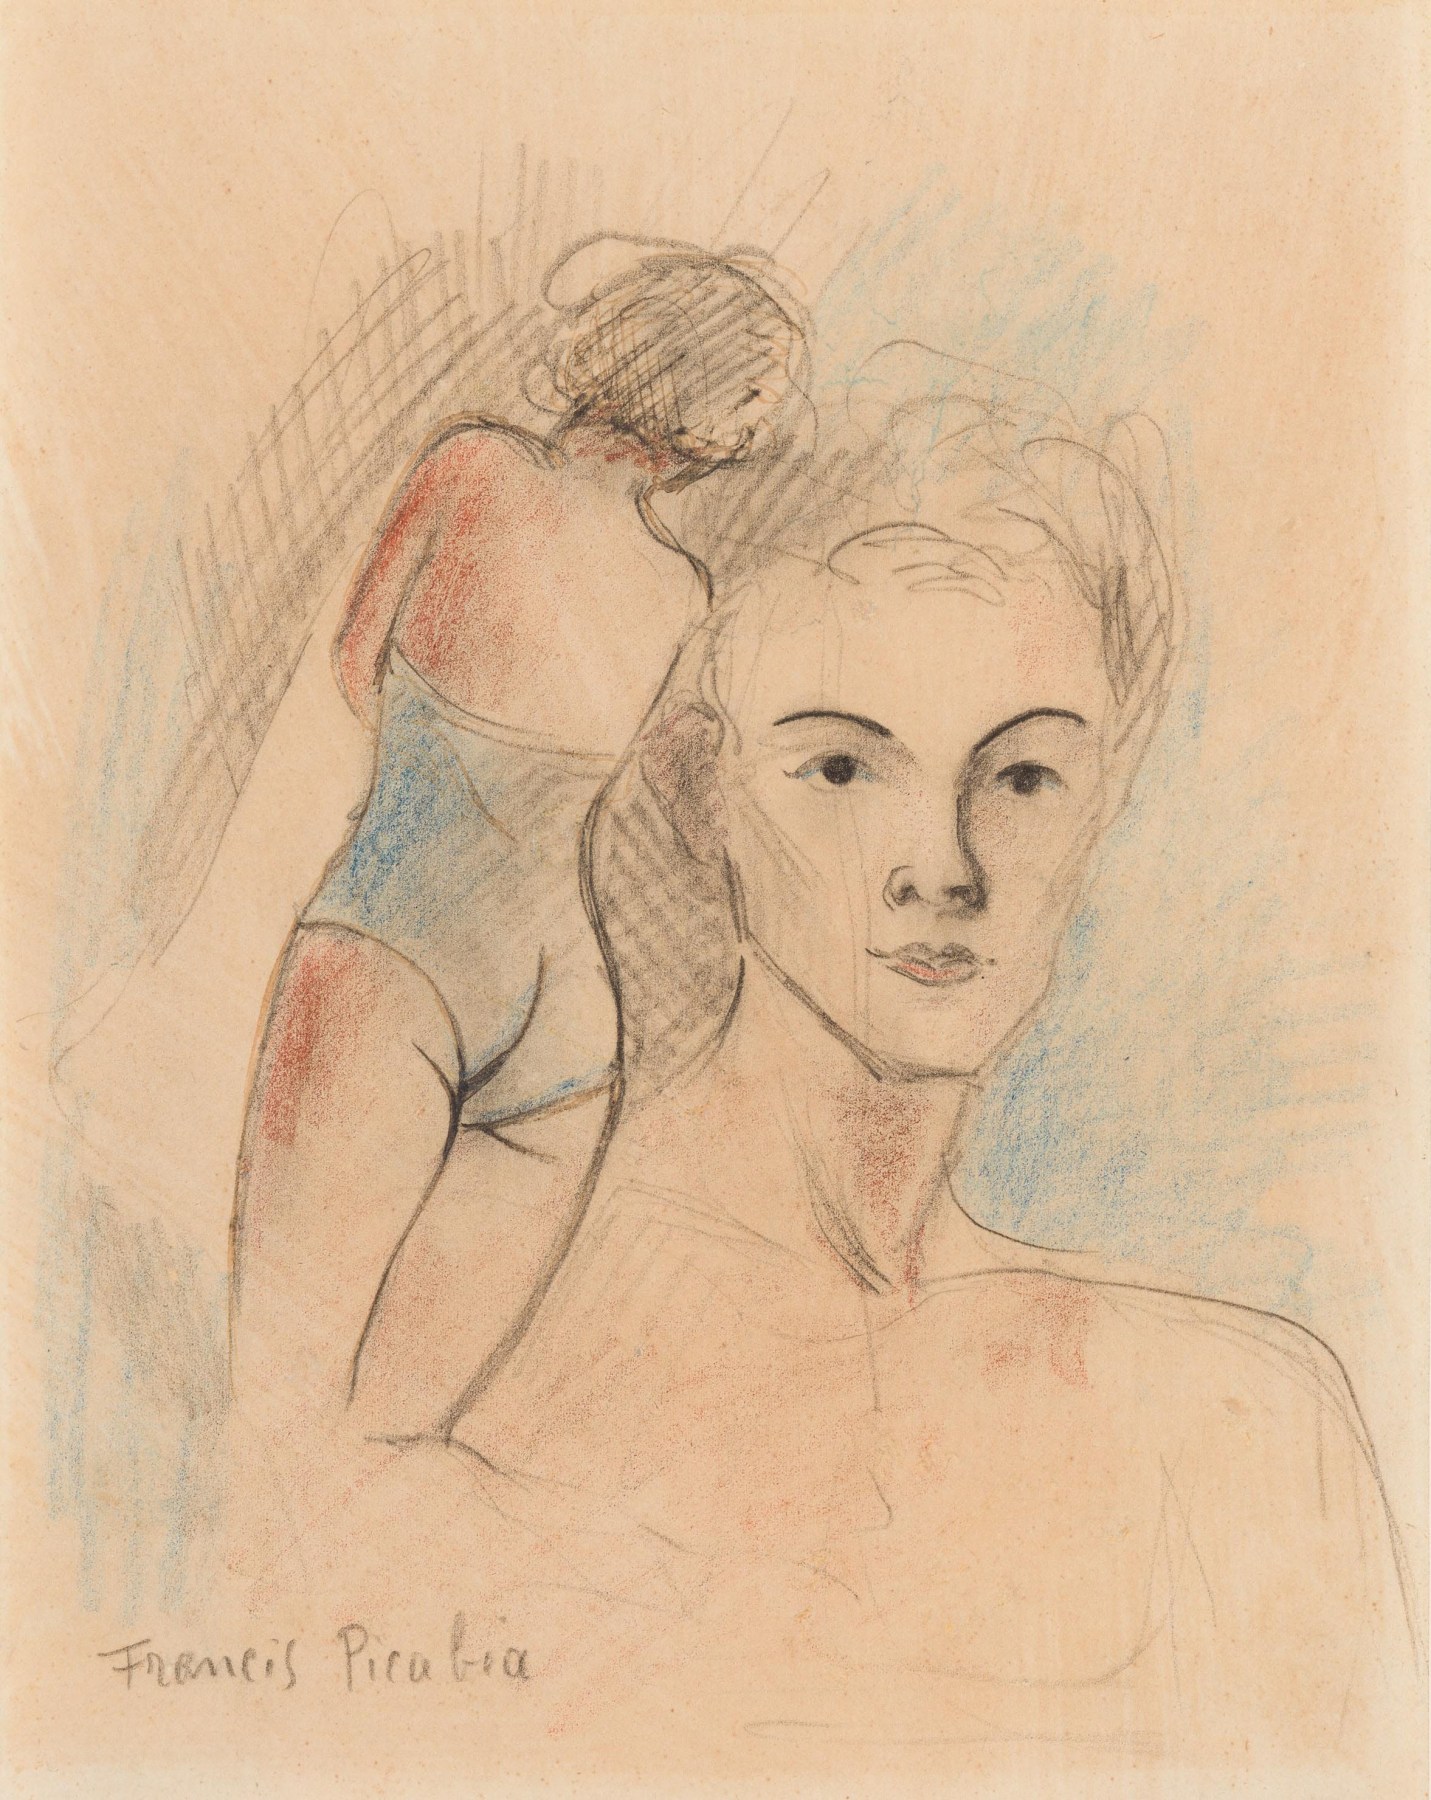 Francis Picabia

&amp;ldquo;Femme nue de dos et portrait&amp;rdquo;, 1940

Pencil, ink, oil crayon on paper

10 1/2 x 8 1/2 inches

26.5 x 21.5 cm

PIZ 13